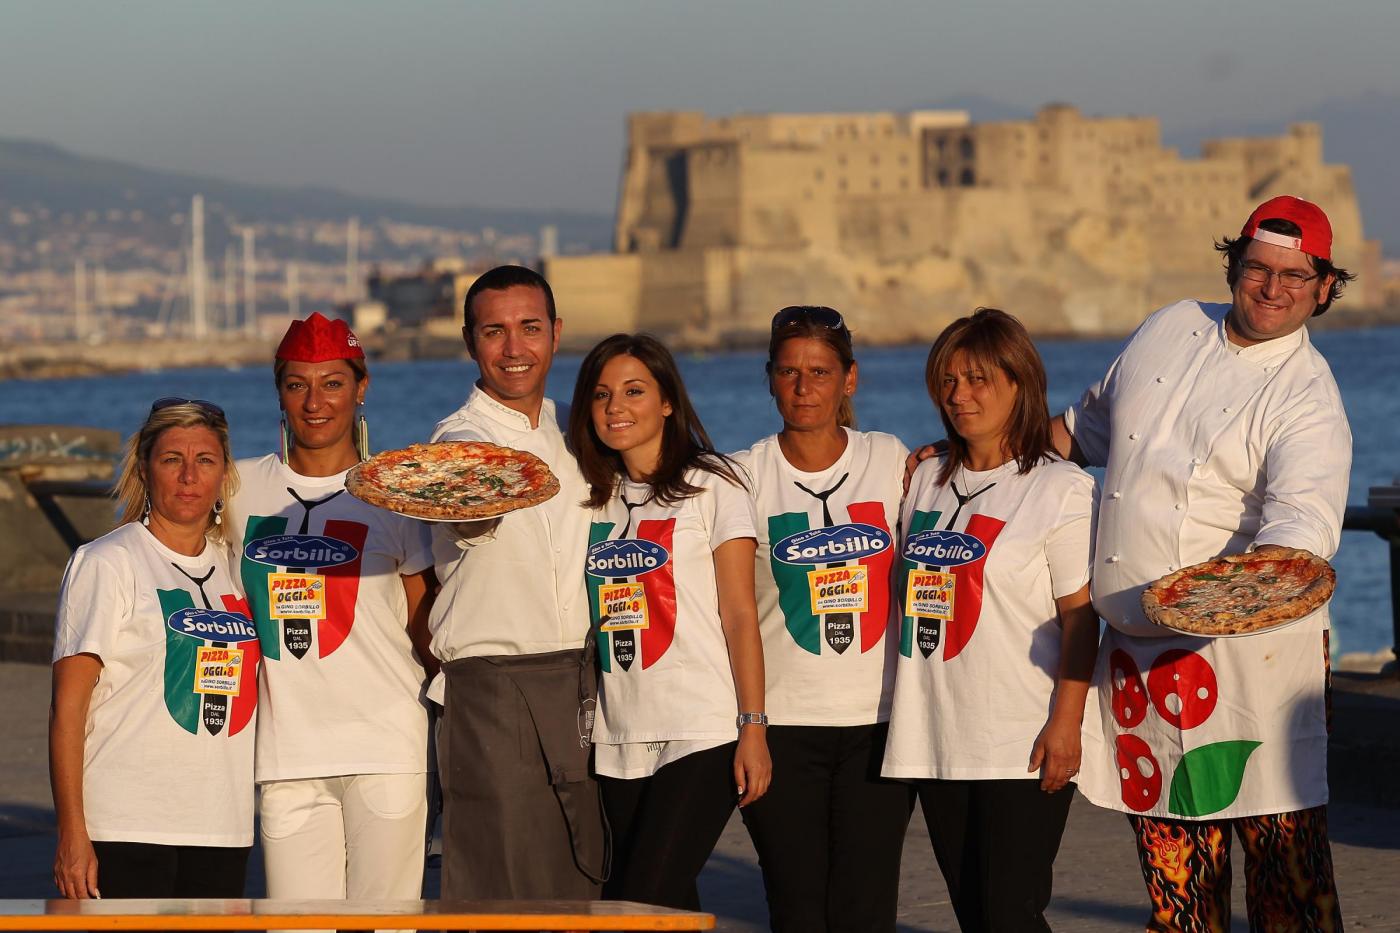 Napoli, campionato mondiale del pizzaiuolo11